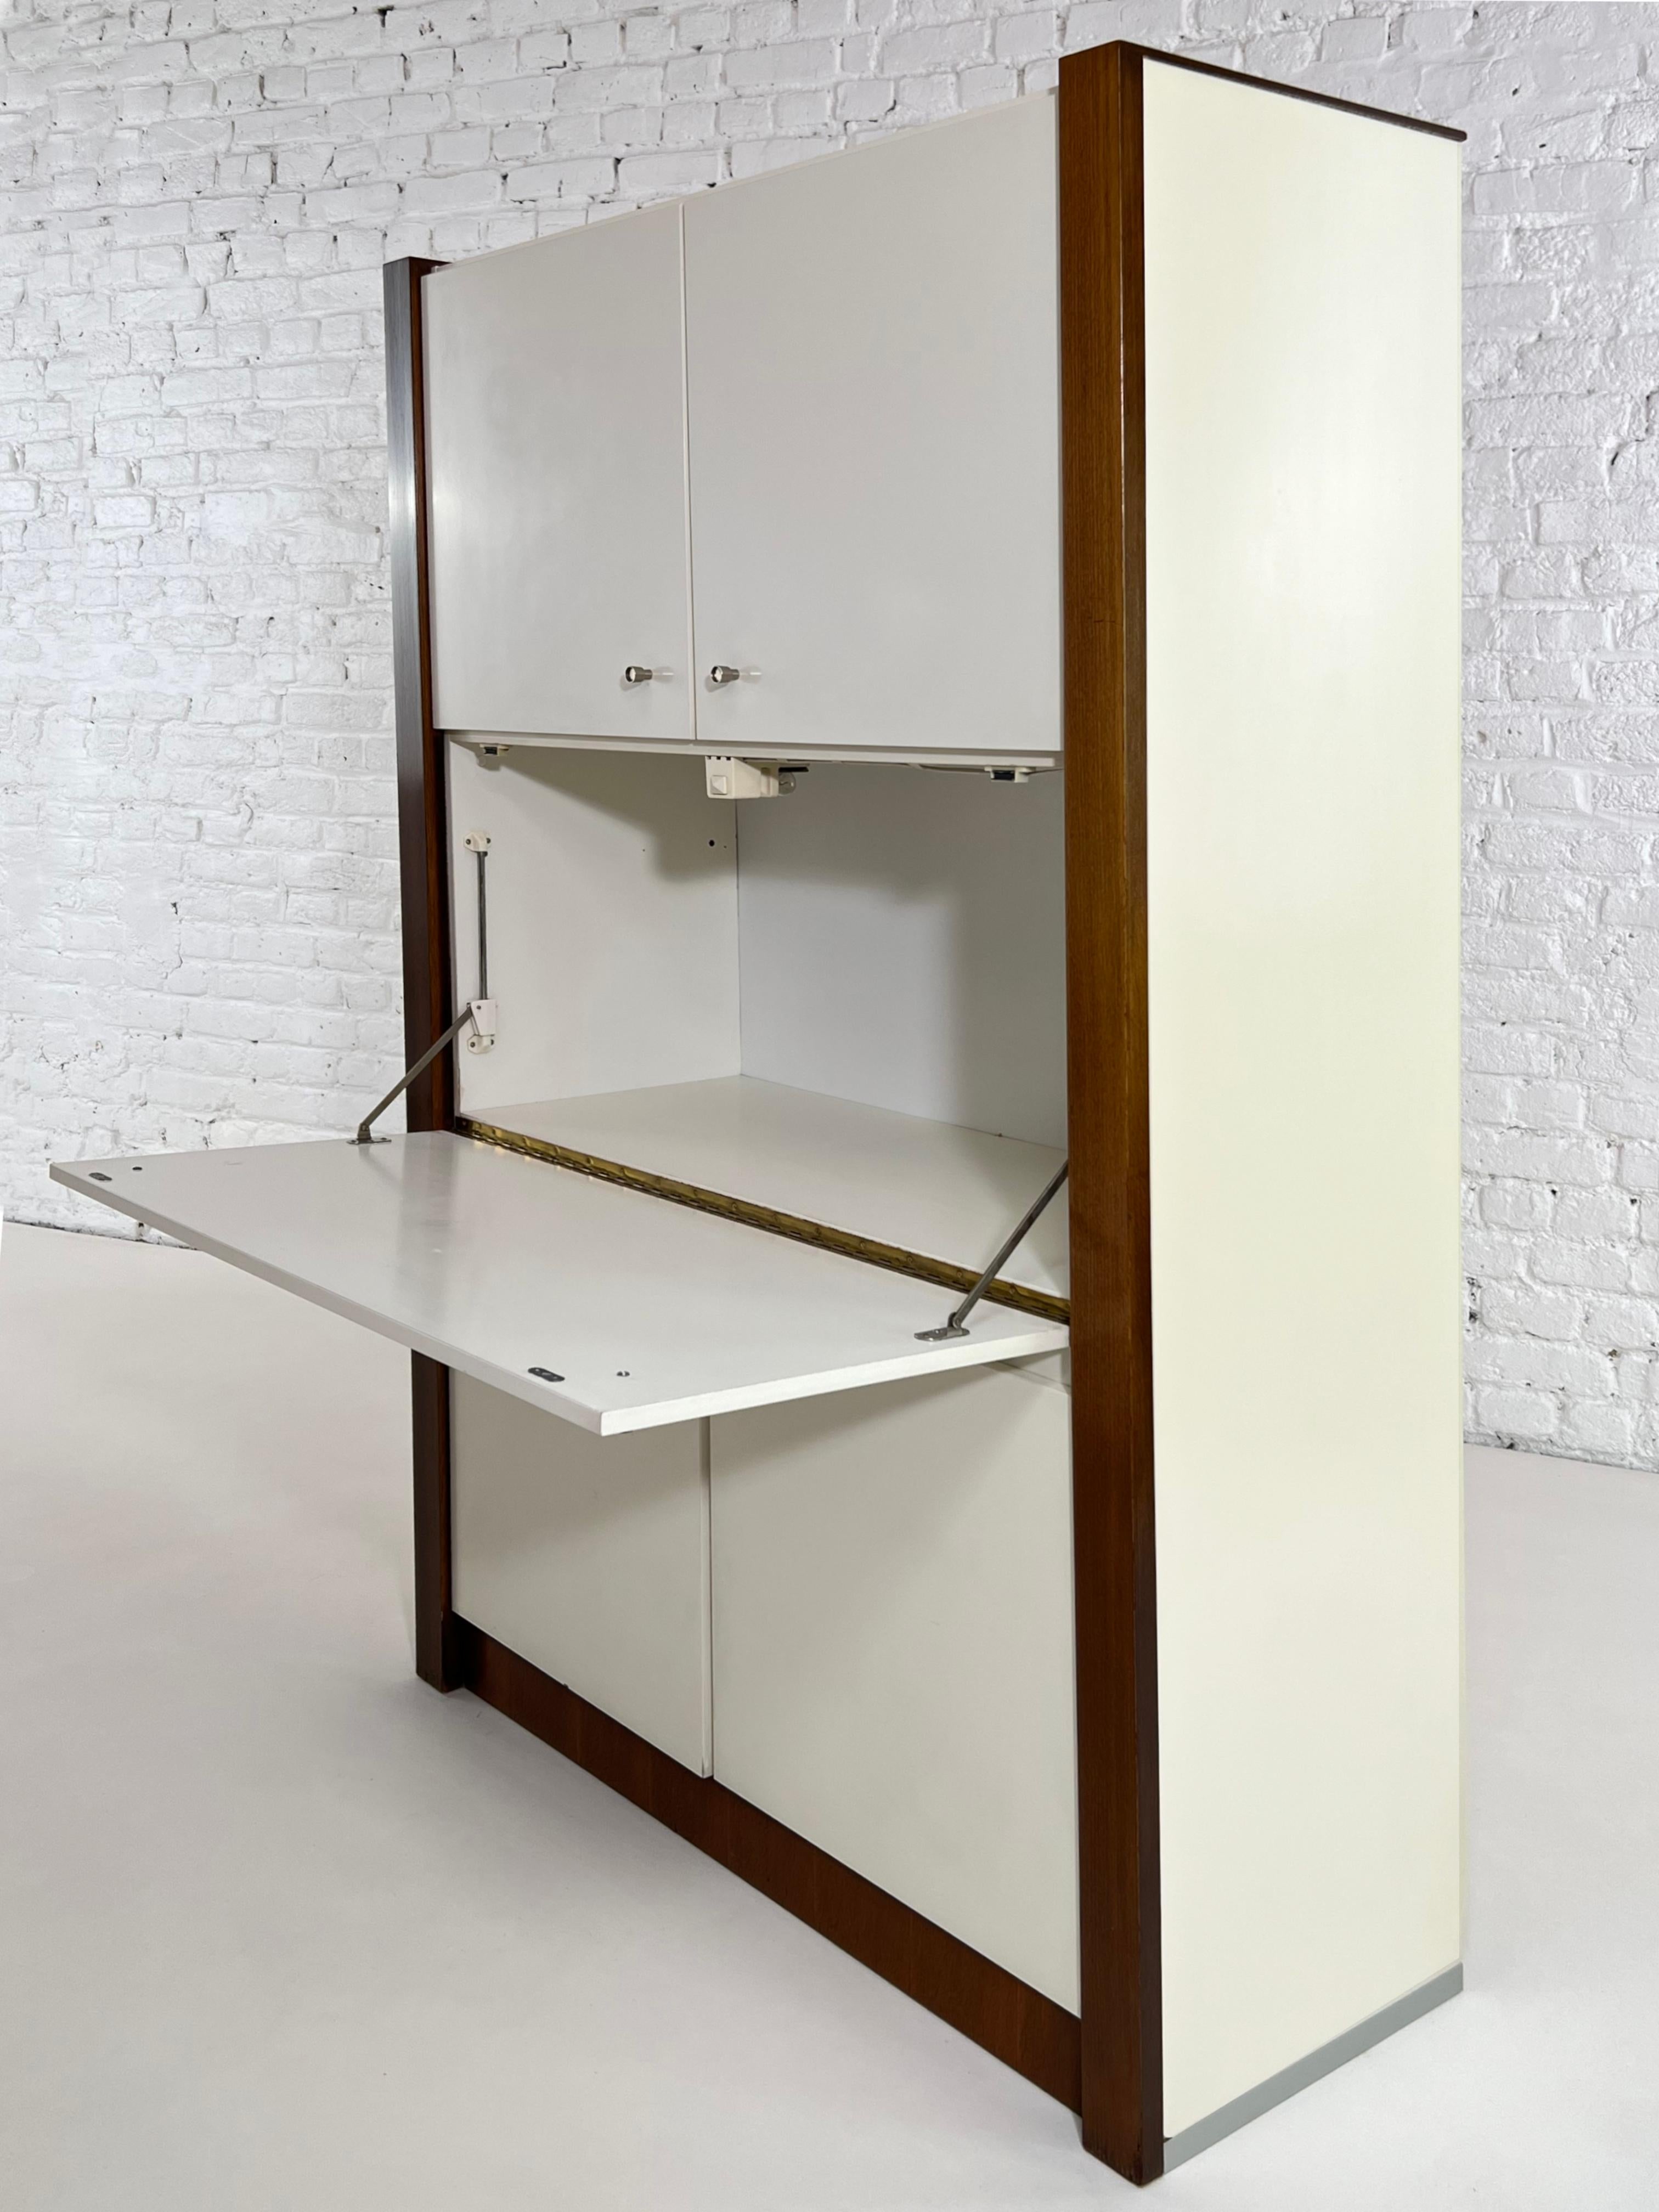 Belgian German Design Wooden Bar Cabinet For Sale